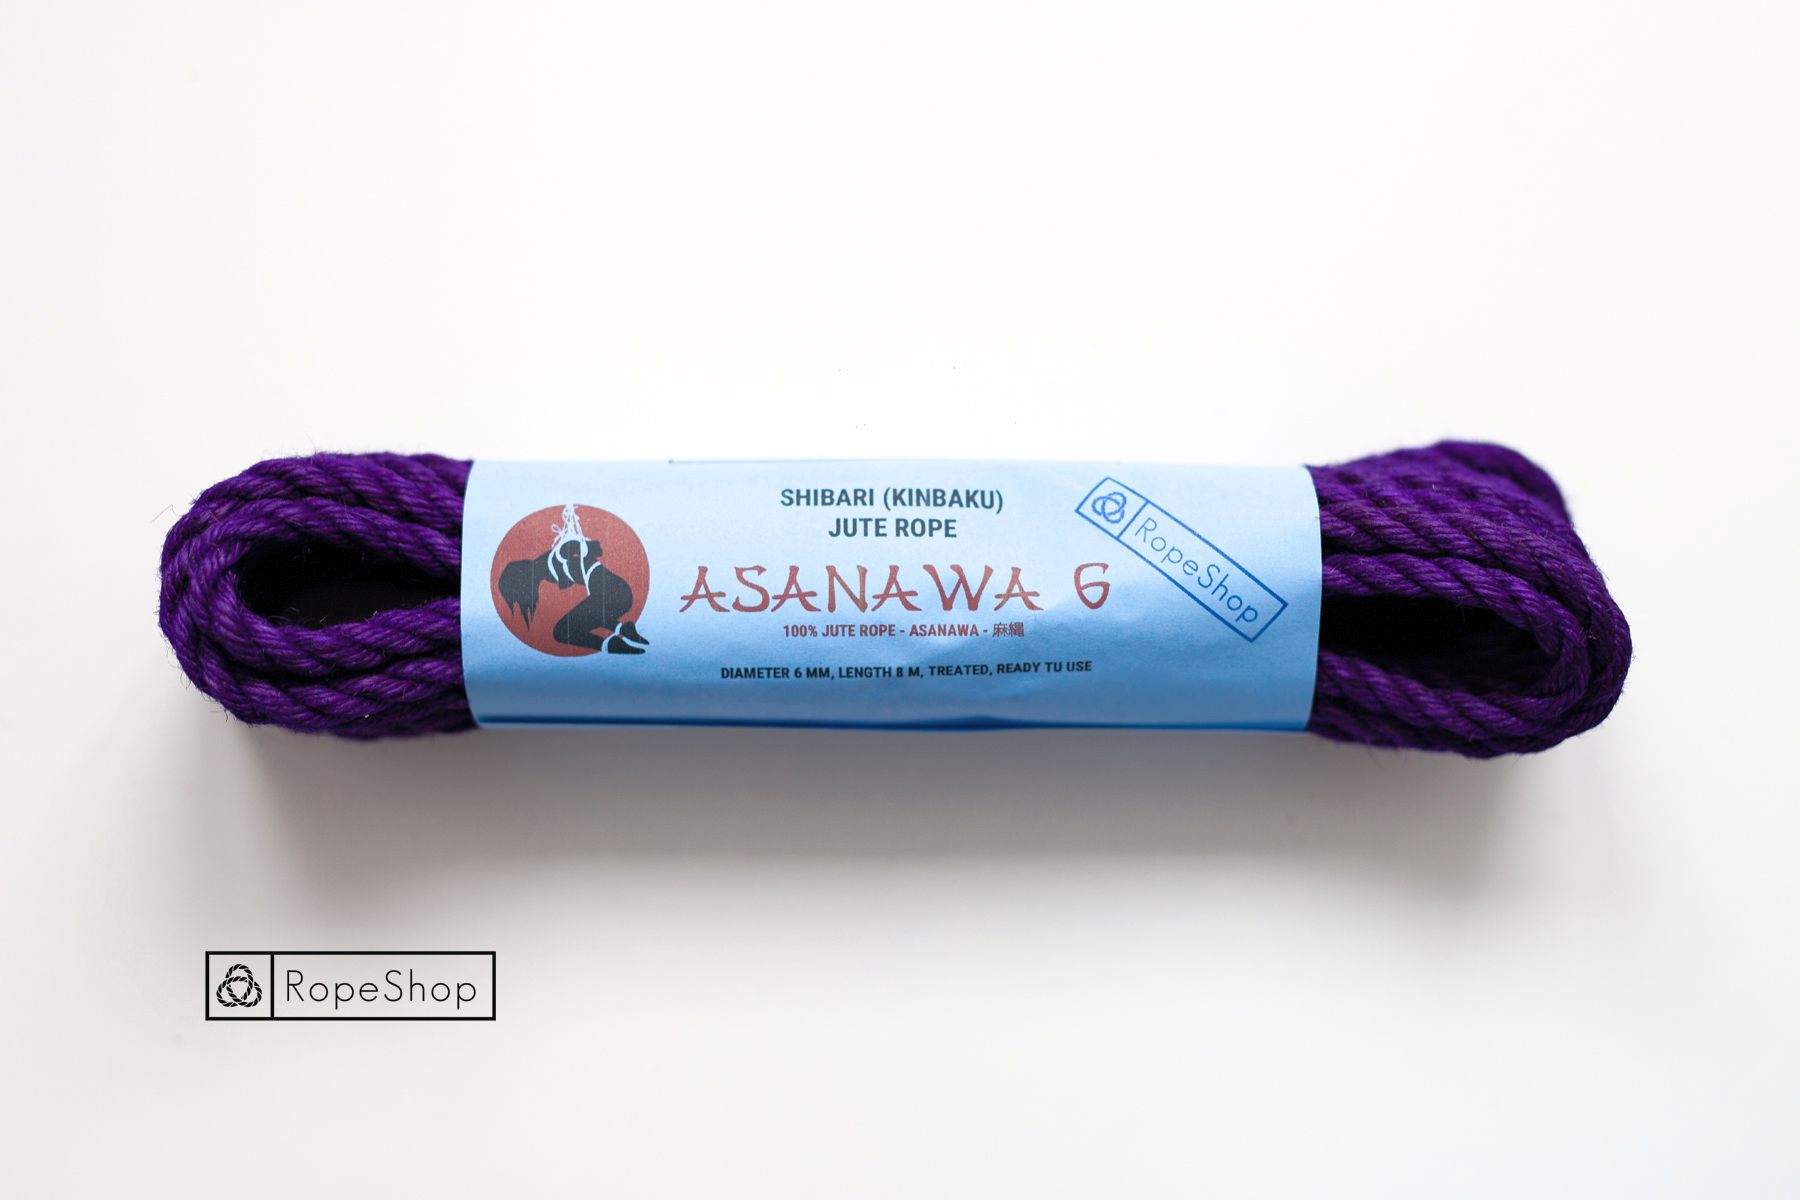 Веревка для шибари 6 мм. джутовая Asanawa 6 (Japan) обработанная, фиолетовая